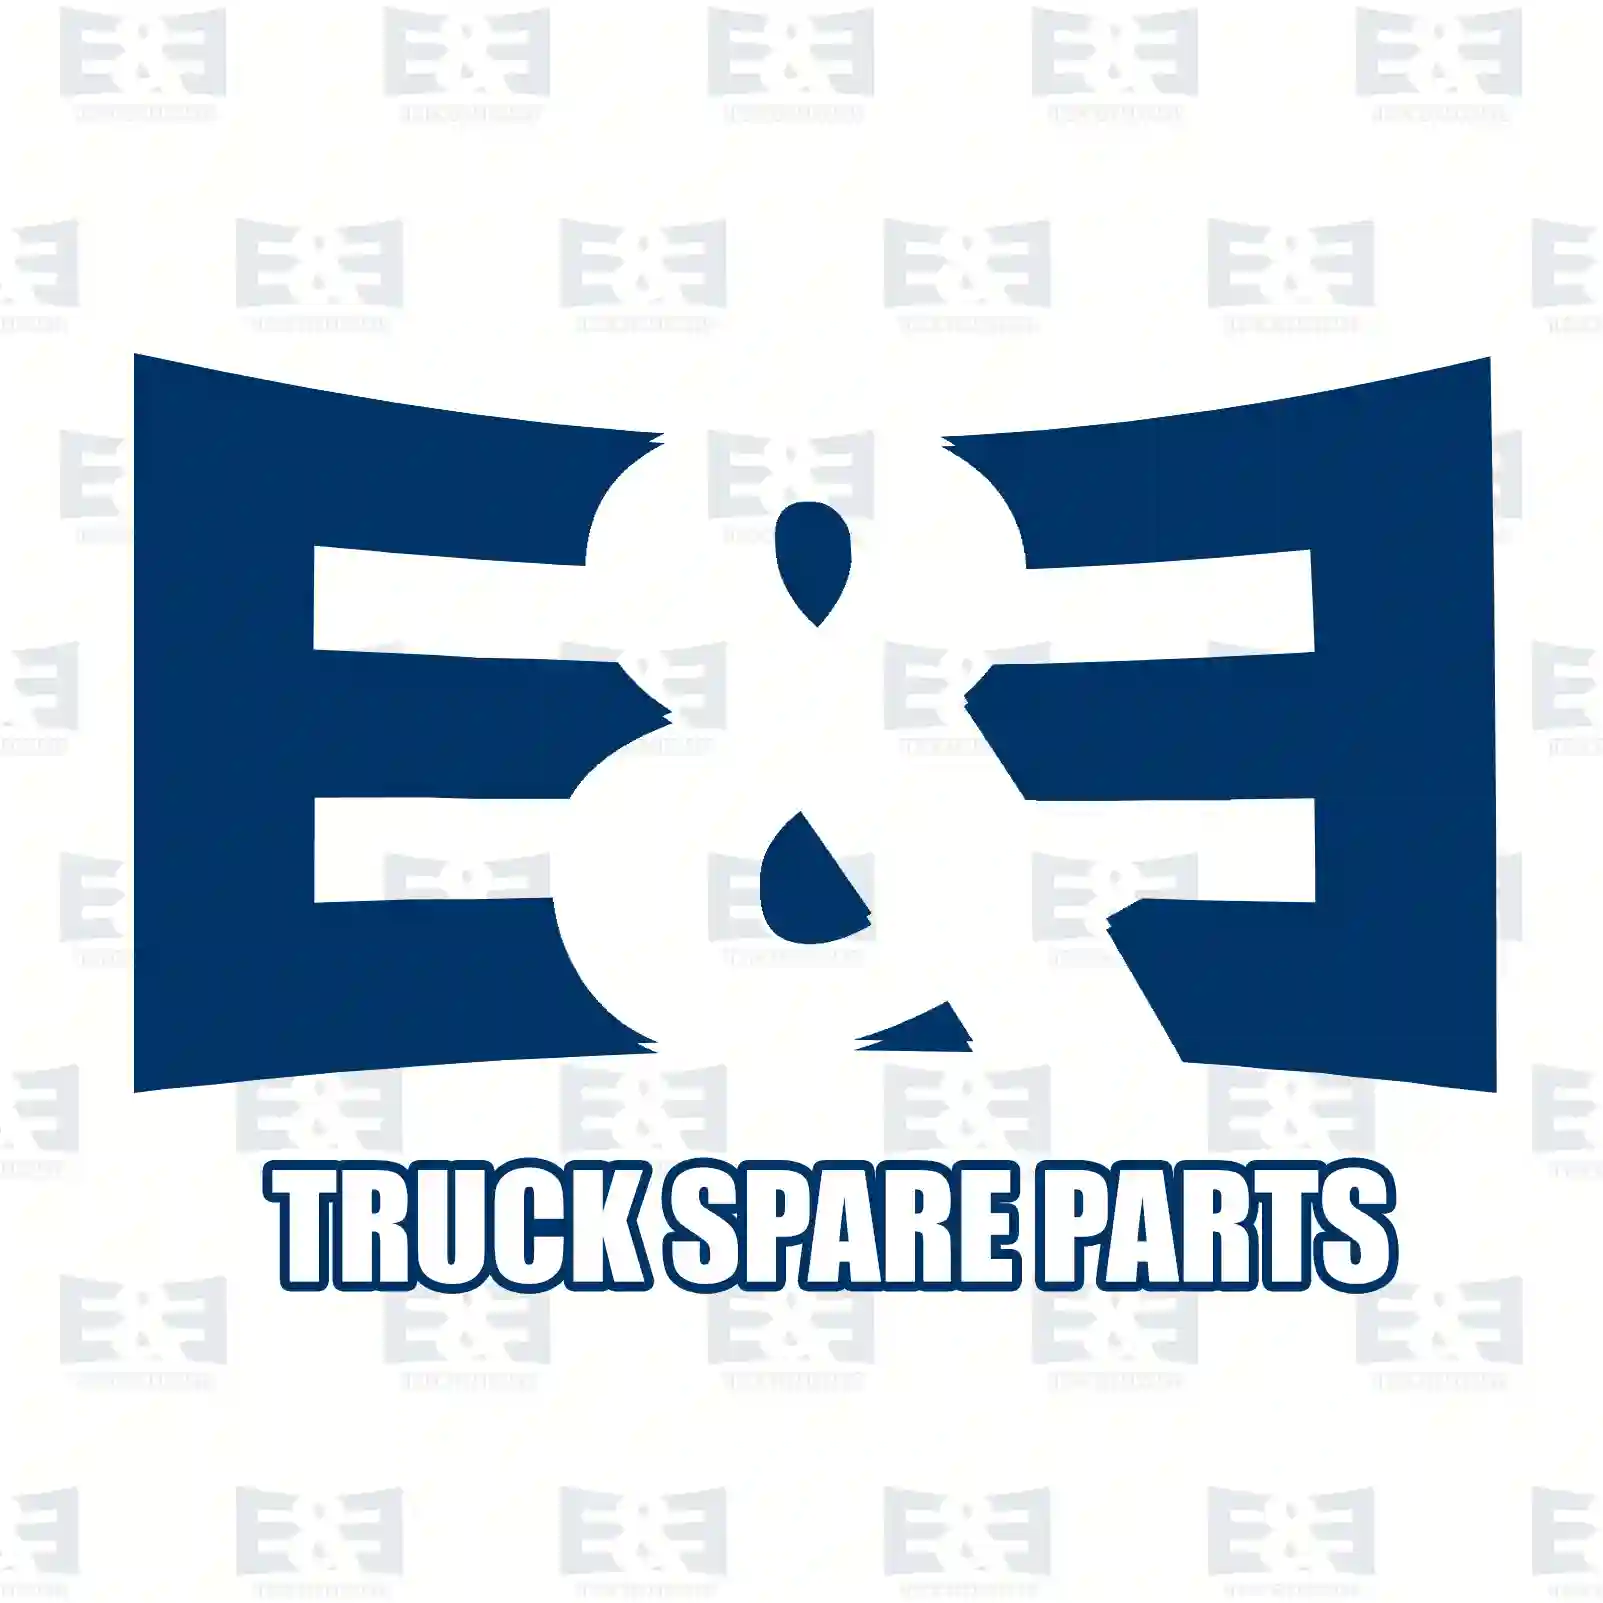 Front exhaust pipe, 2E2204428, 2107951, 2139676 ||  2E2204428 E&E Truck Spare Parts | Truck Spare Parts, Auotomotive Spare Parts Front exhaust pipe, 2E2204428, 2107951, 2139676 ||  2E2204428 E&E Truck Spare Parts | Truck Spare Parts, Auotomotive Spare Parts